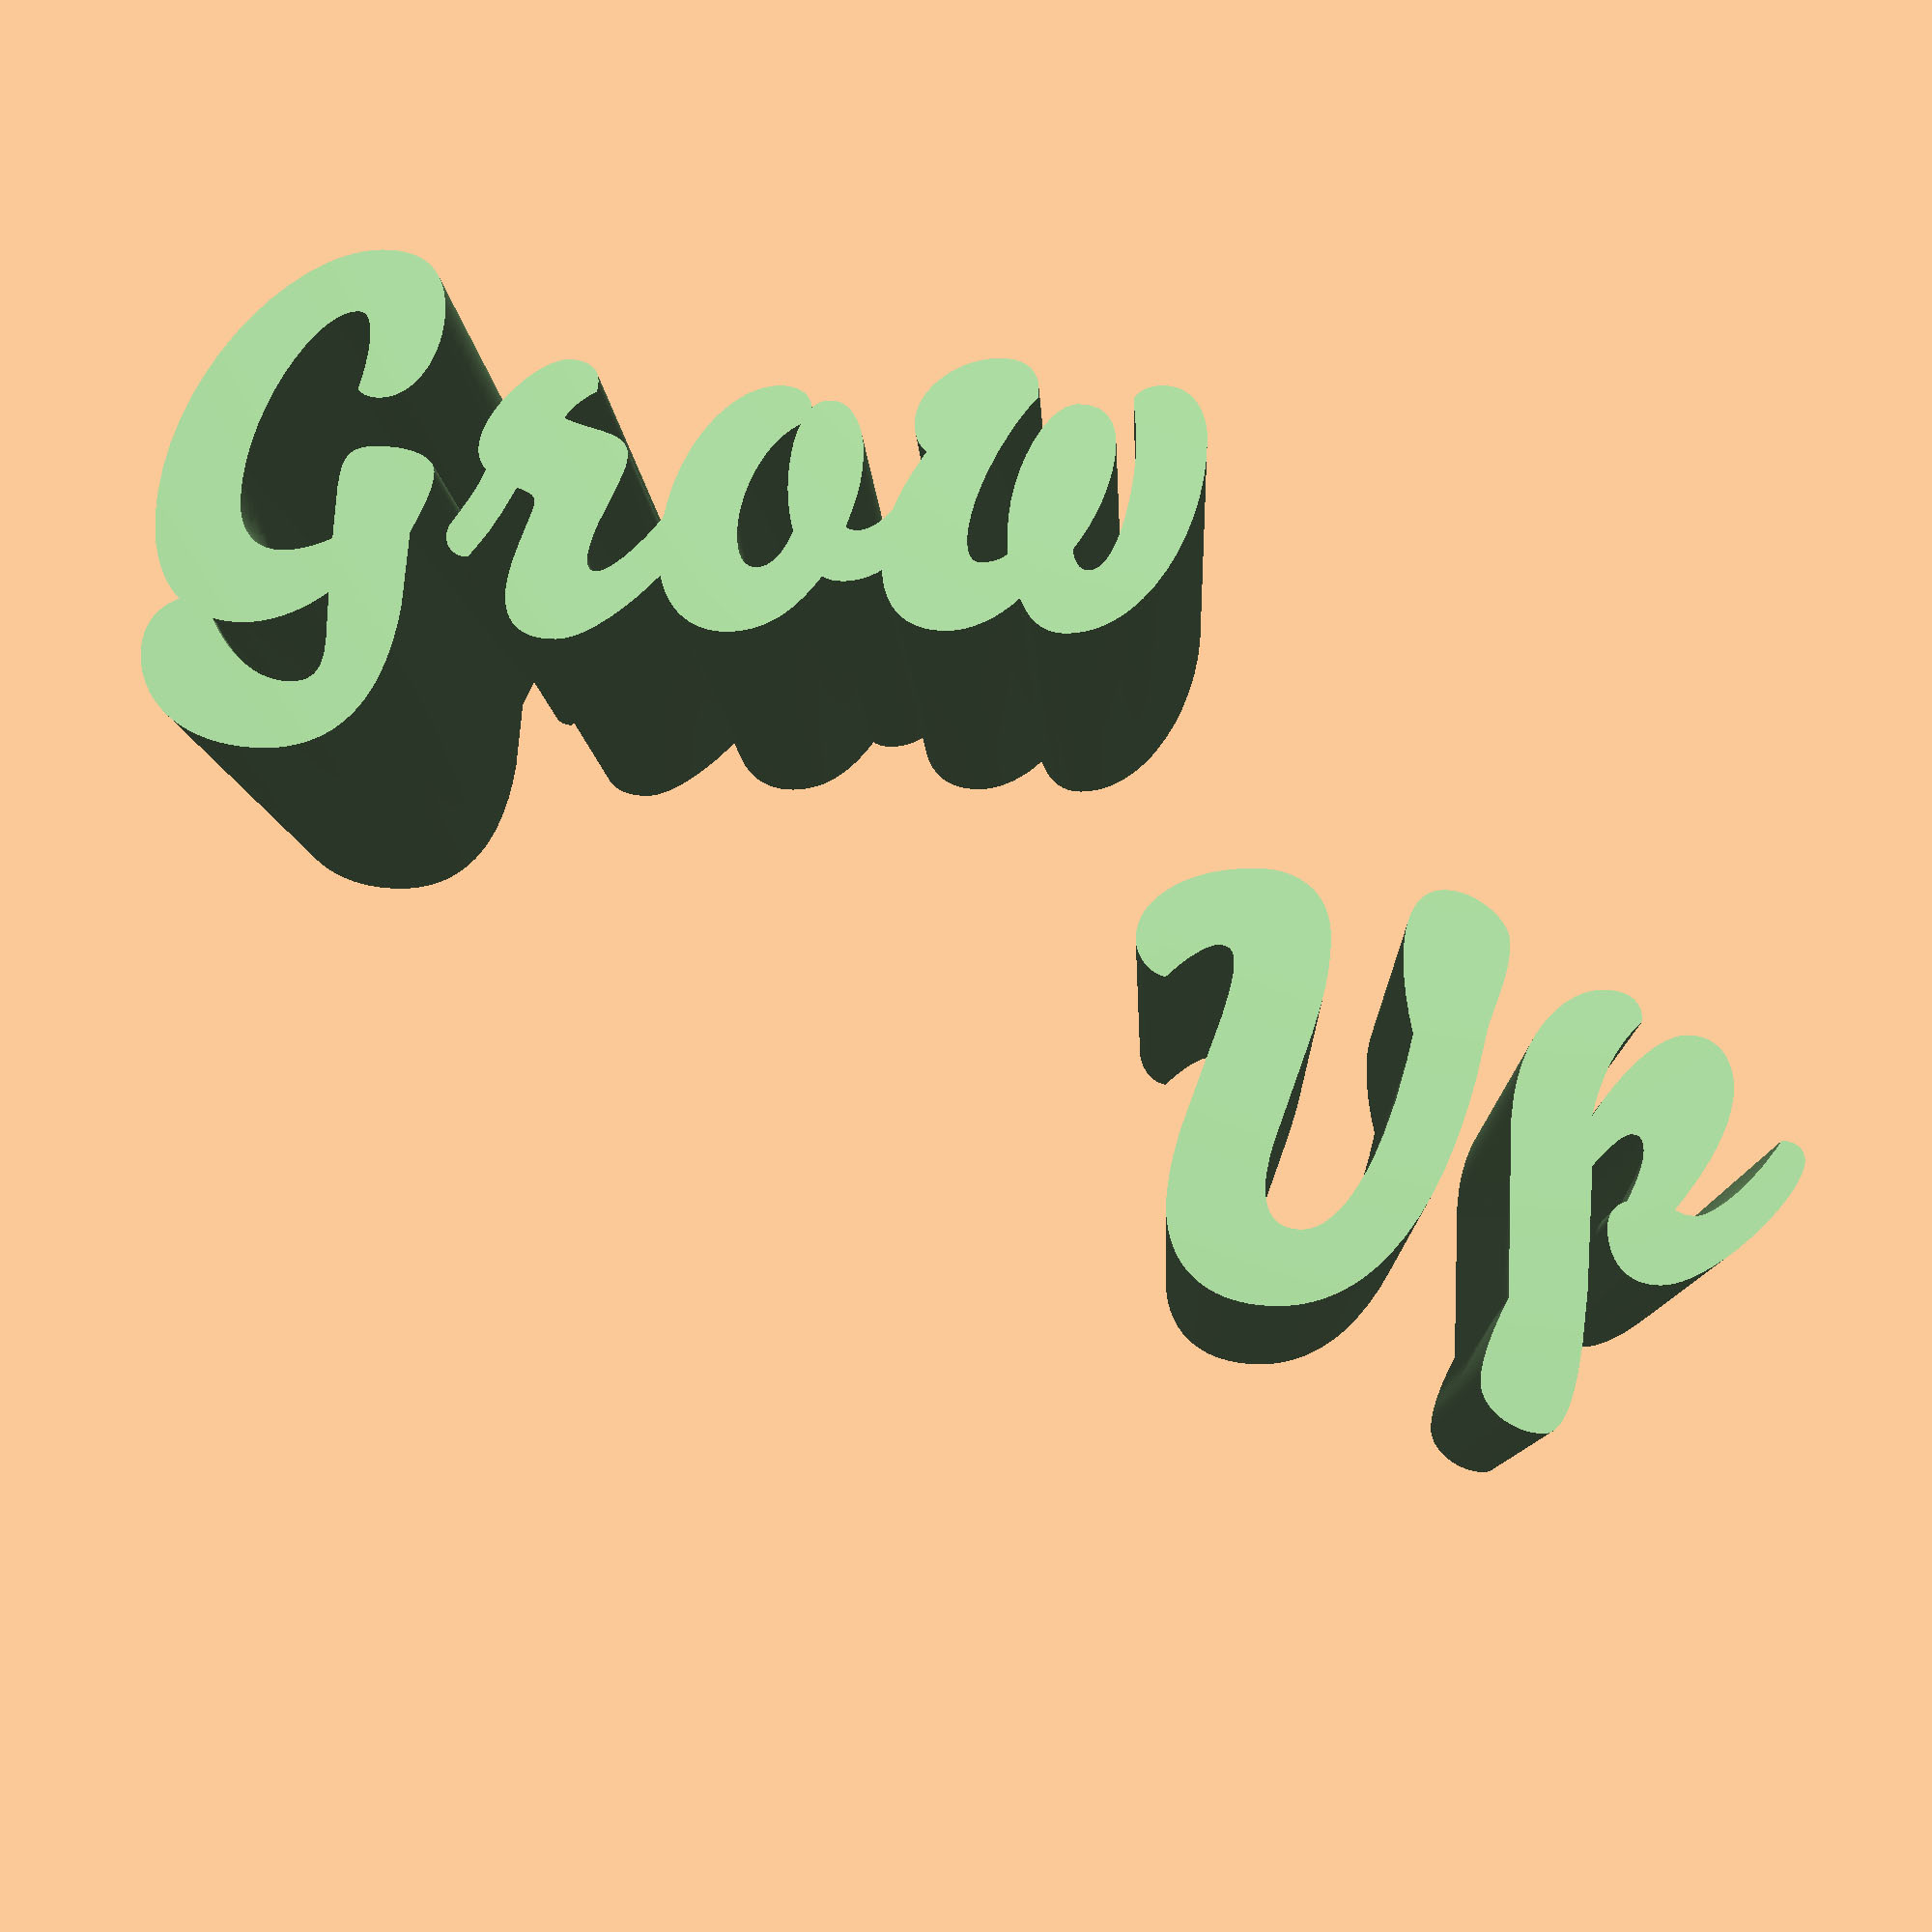 GrowUp.jpg